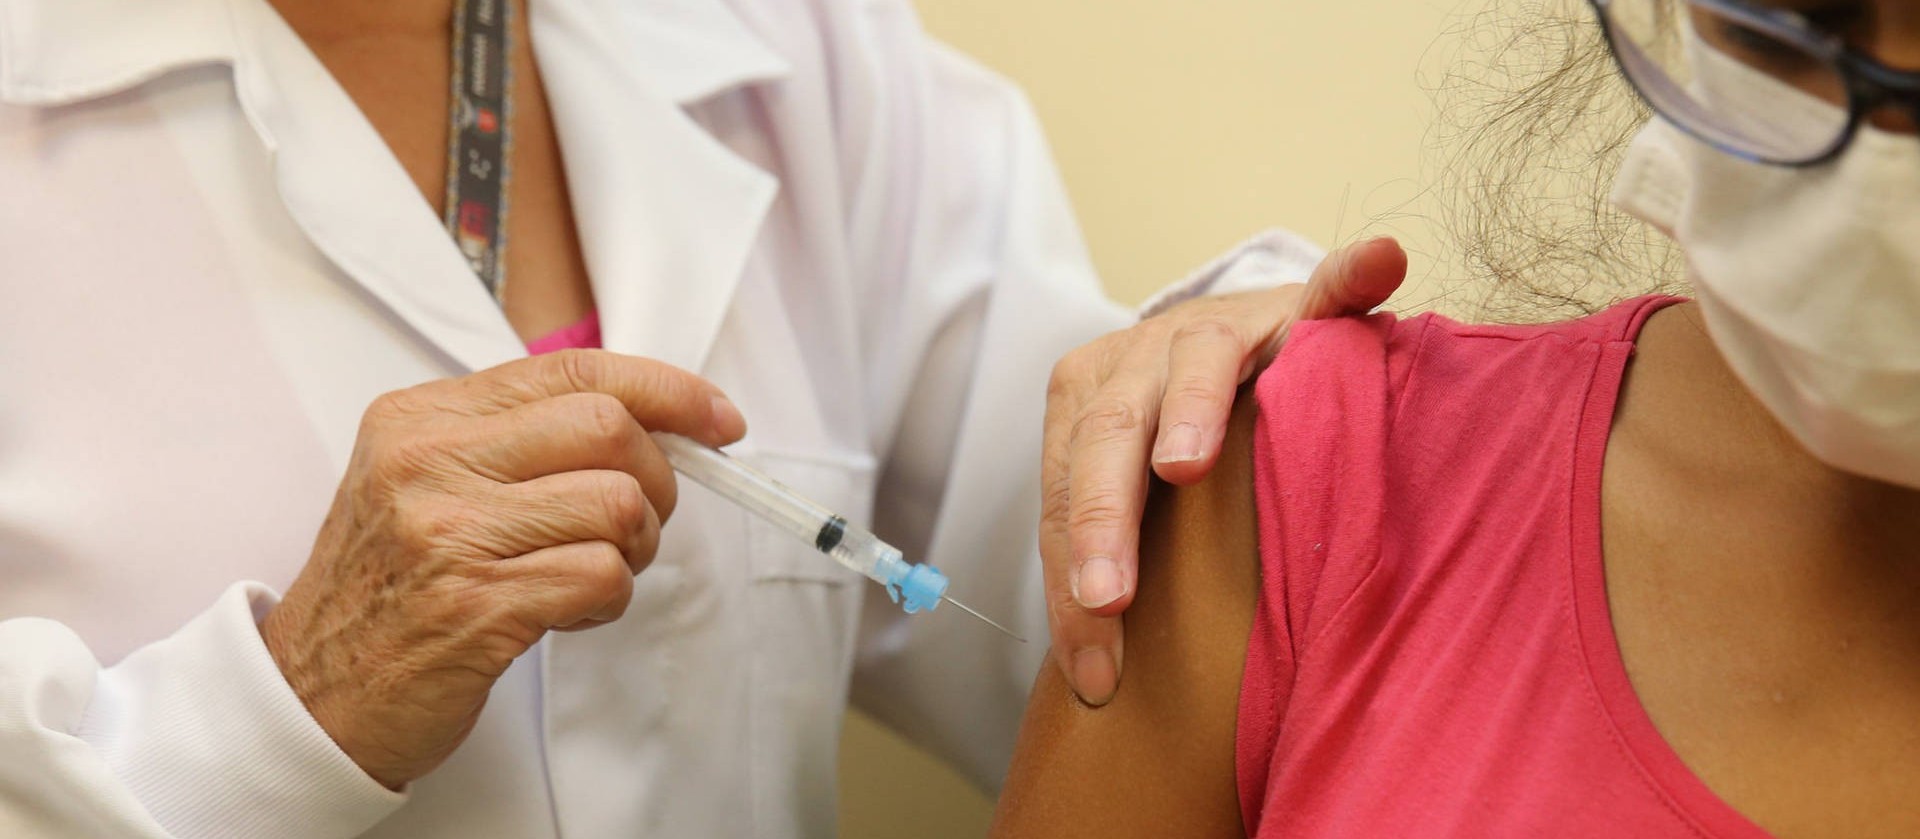 Paraná não atingiu nem metade do público-alvo da vacinação contra a gripe